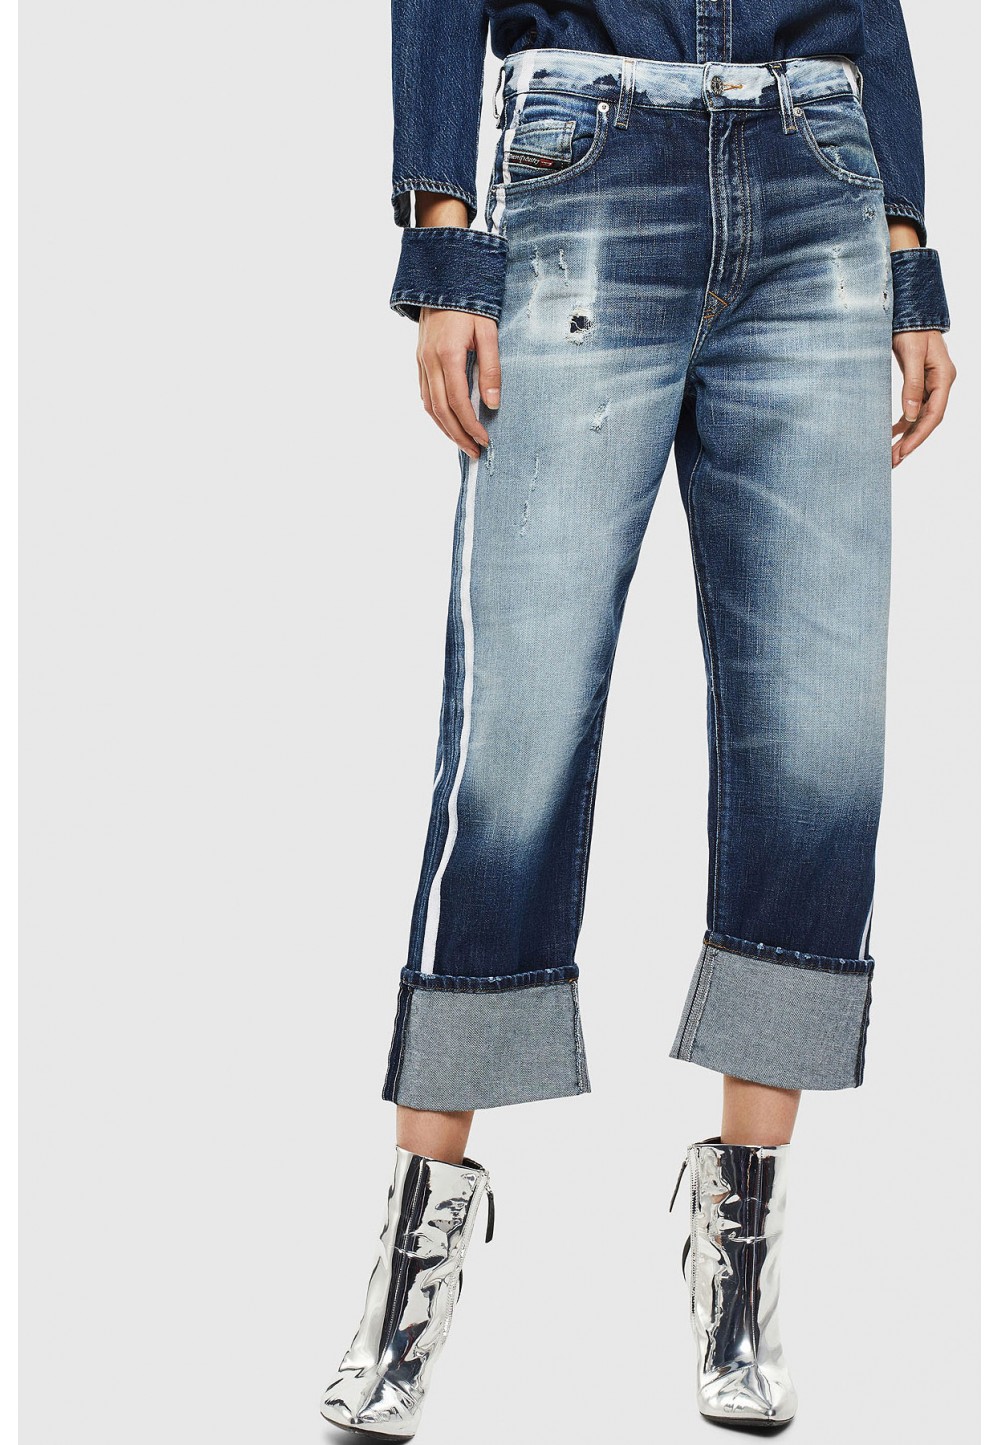  Жіночі джинси з лампасами